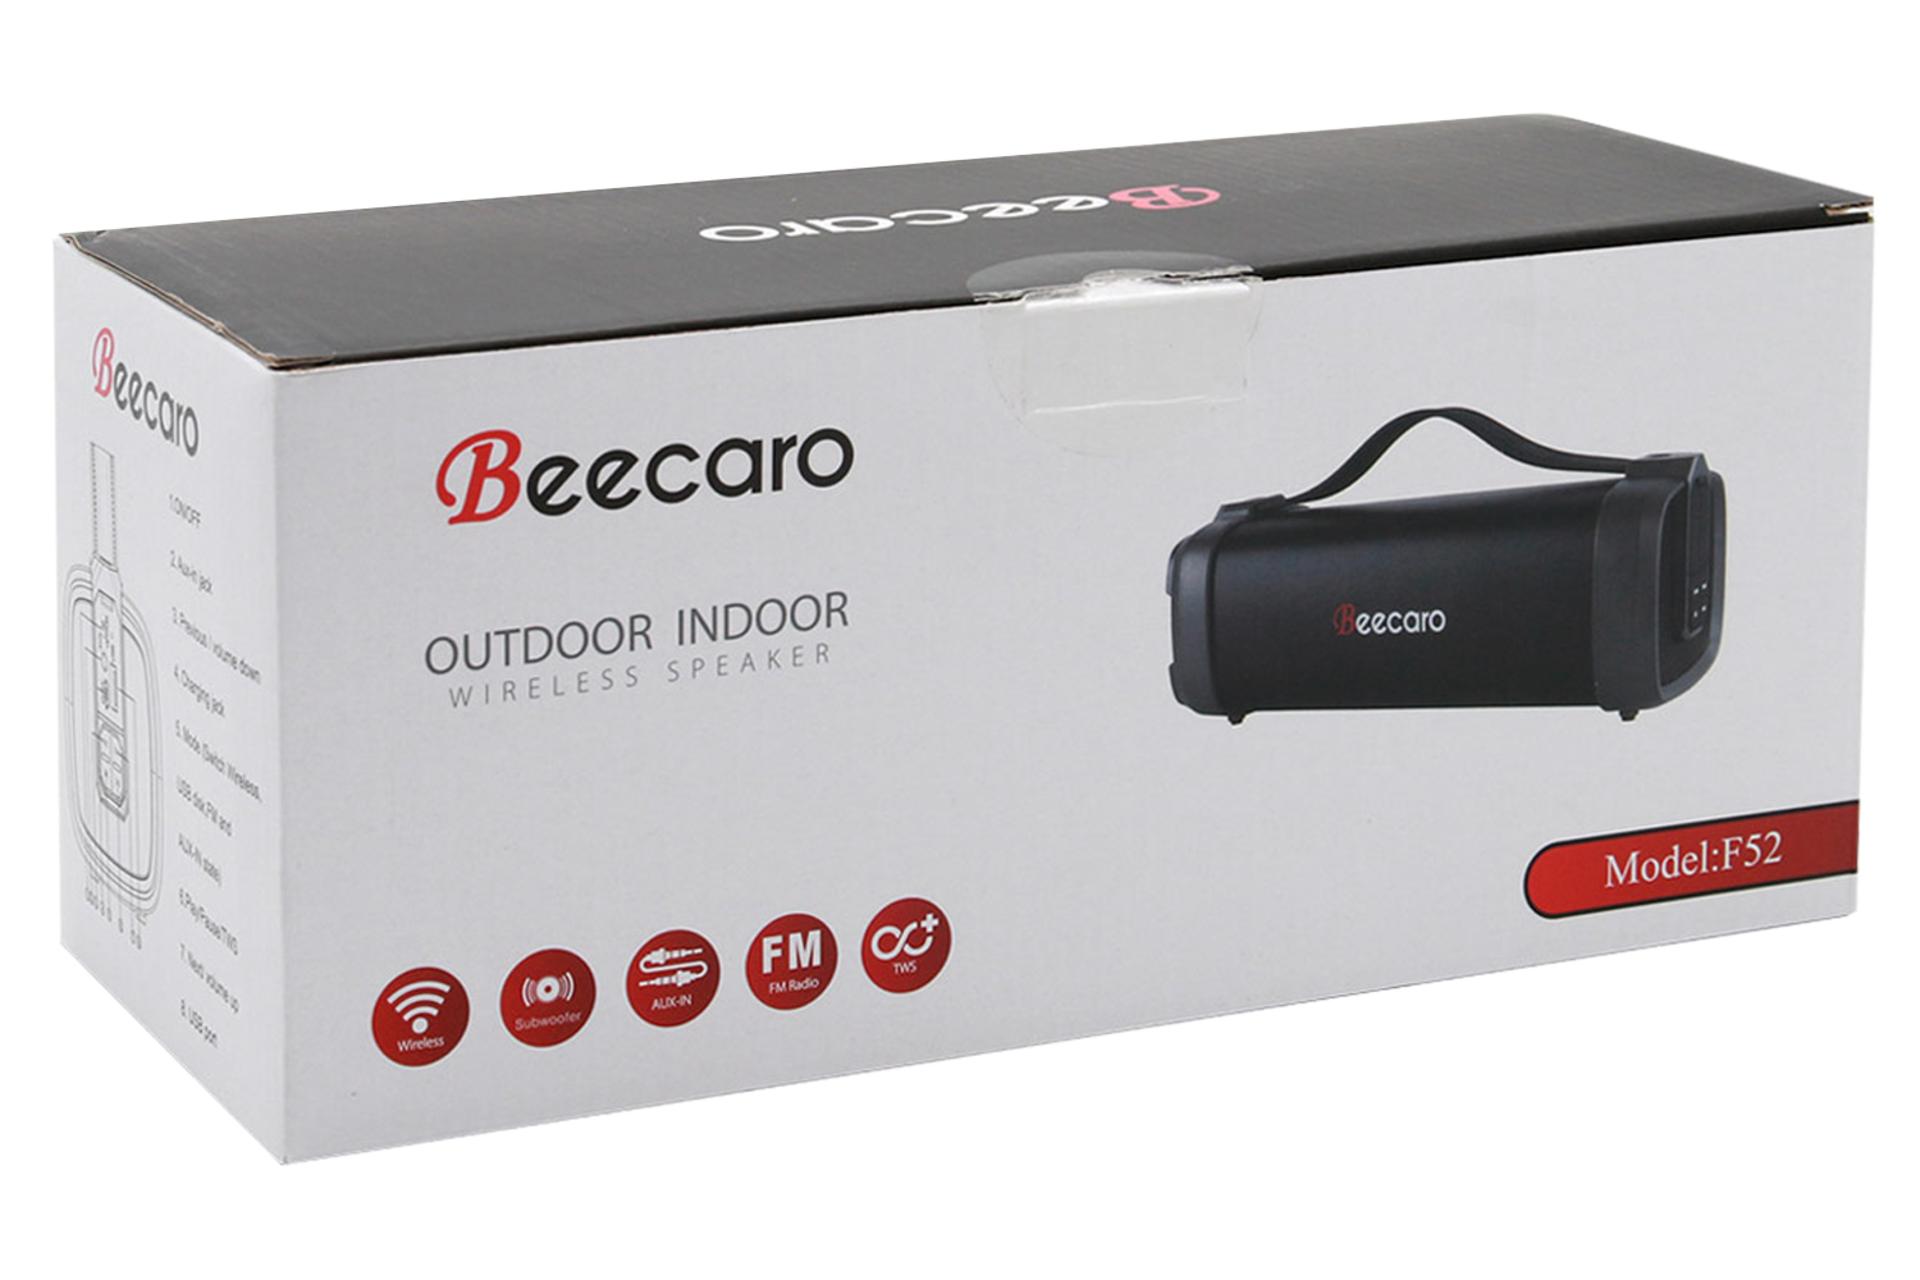 جعبه اسپیکر بیکارو Beecaro F52